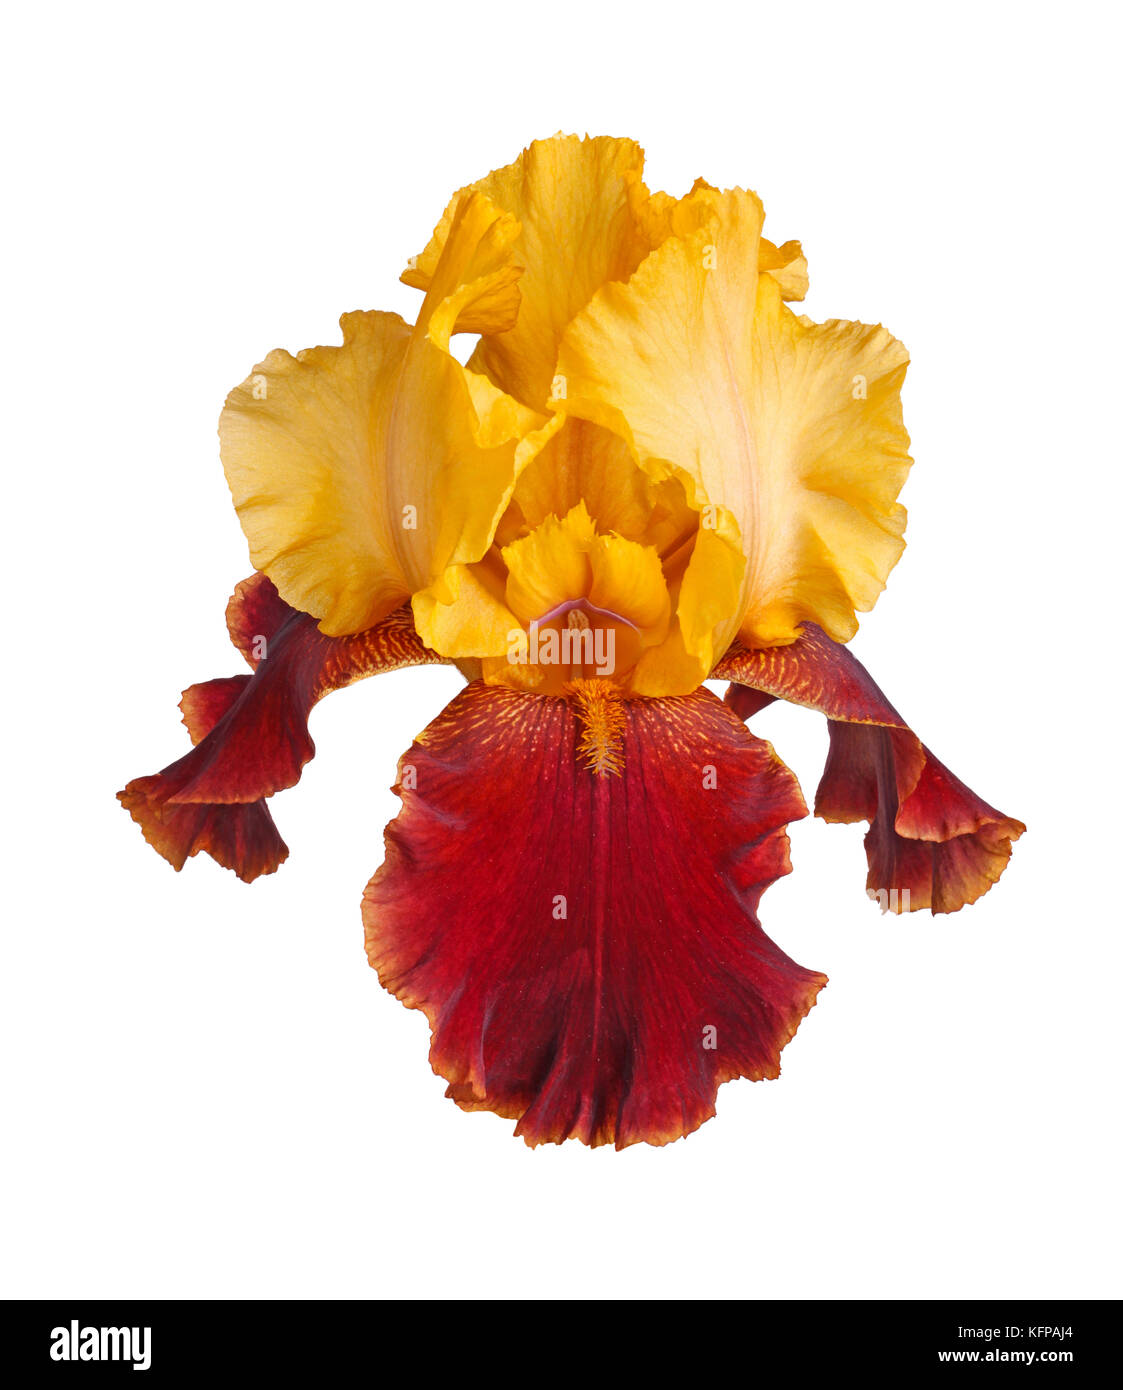 Libre d'un seul jaune et bourgogne fleur d'un iris (iris germanica) isolé sur fond blanc Banque D'Images